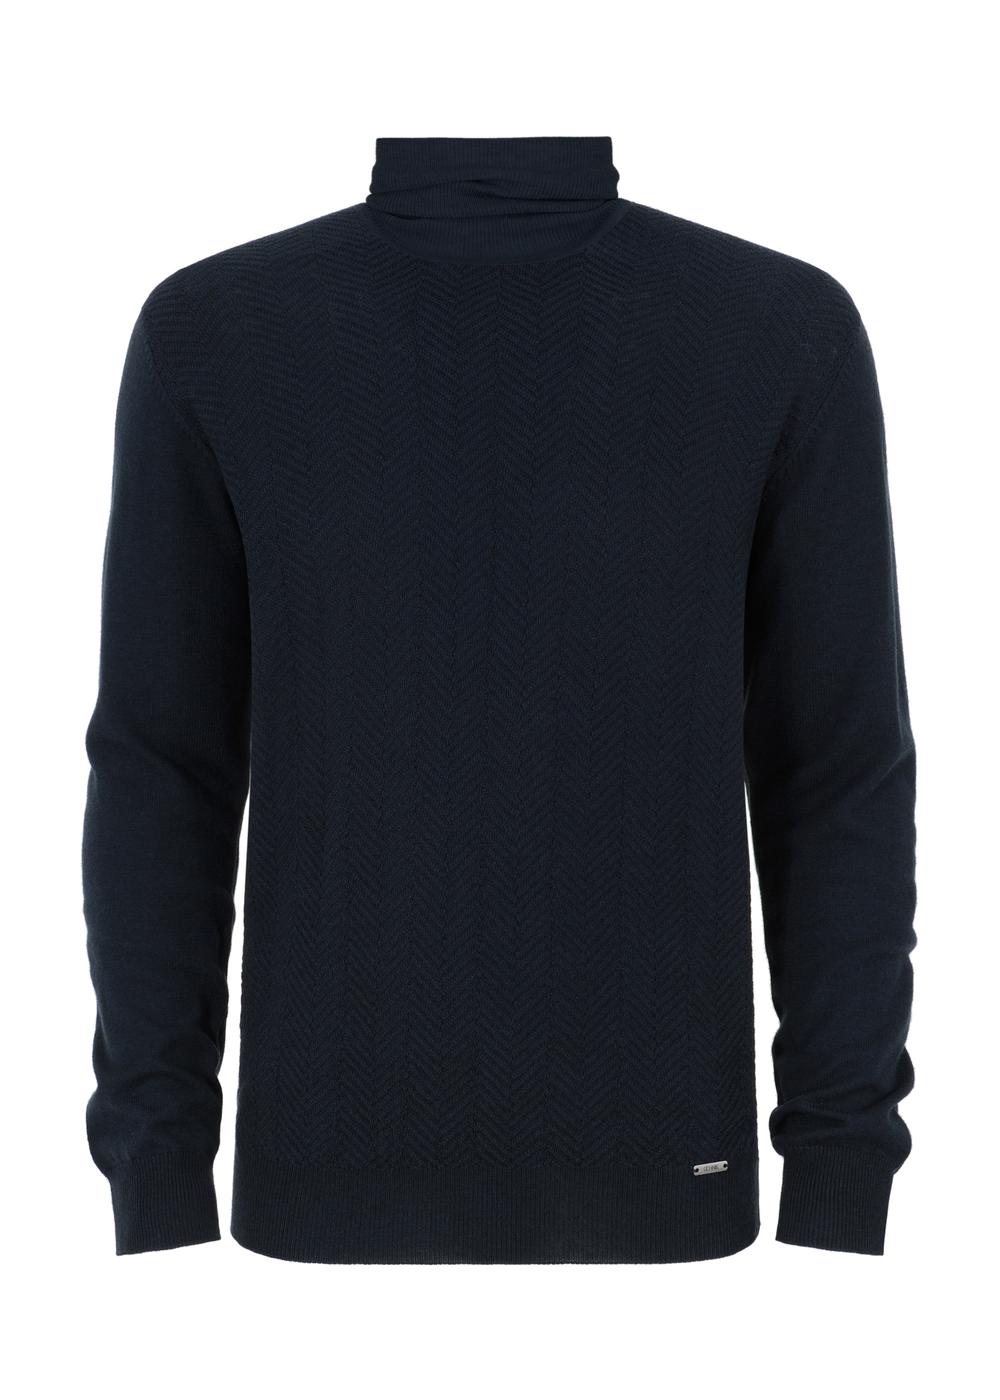 Granatowy sweter męski z golfem SWEMT-0131-69(Z23)